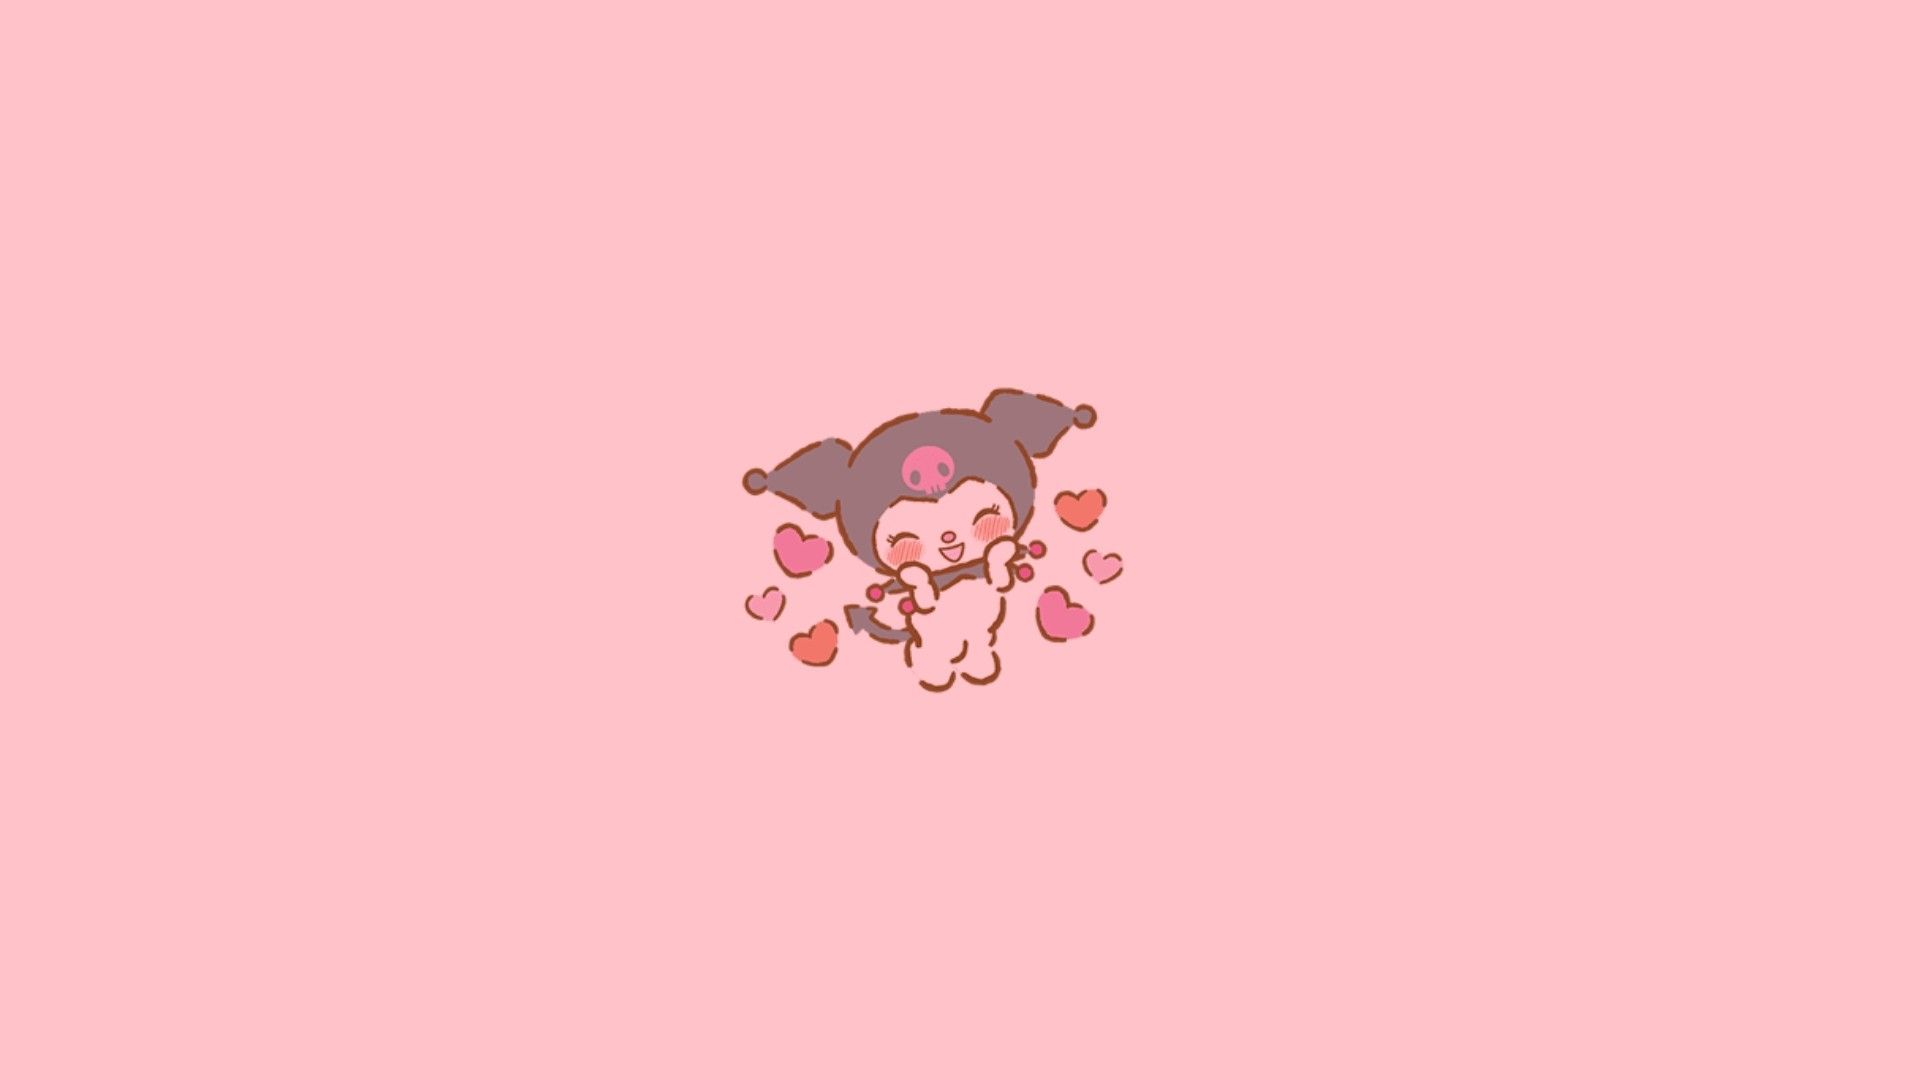 Kuromi holding a pink heart - Kuromi